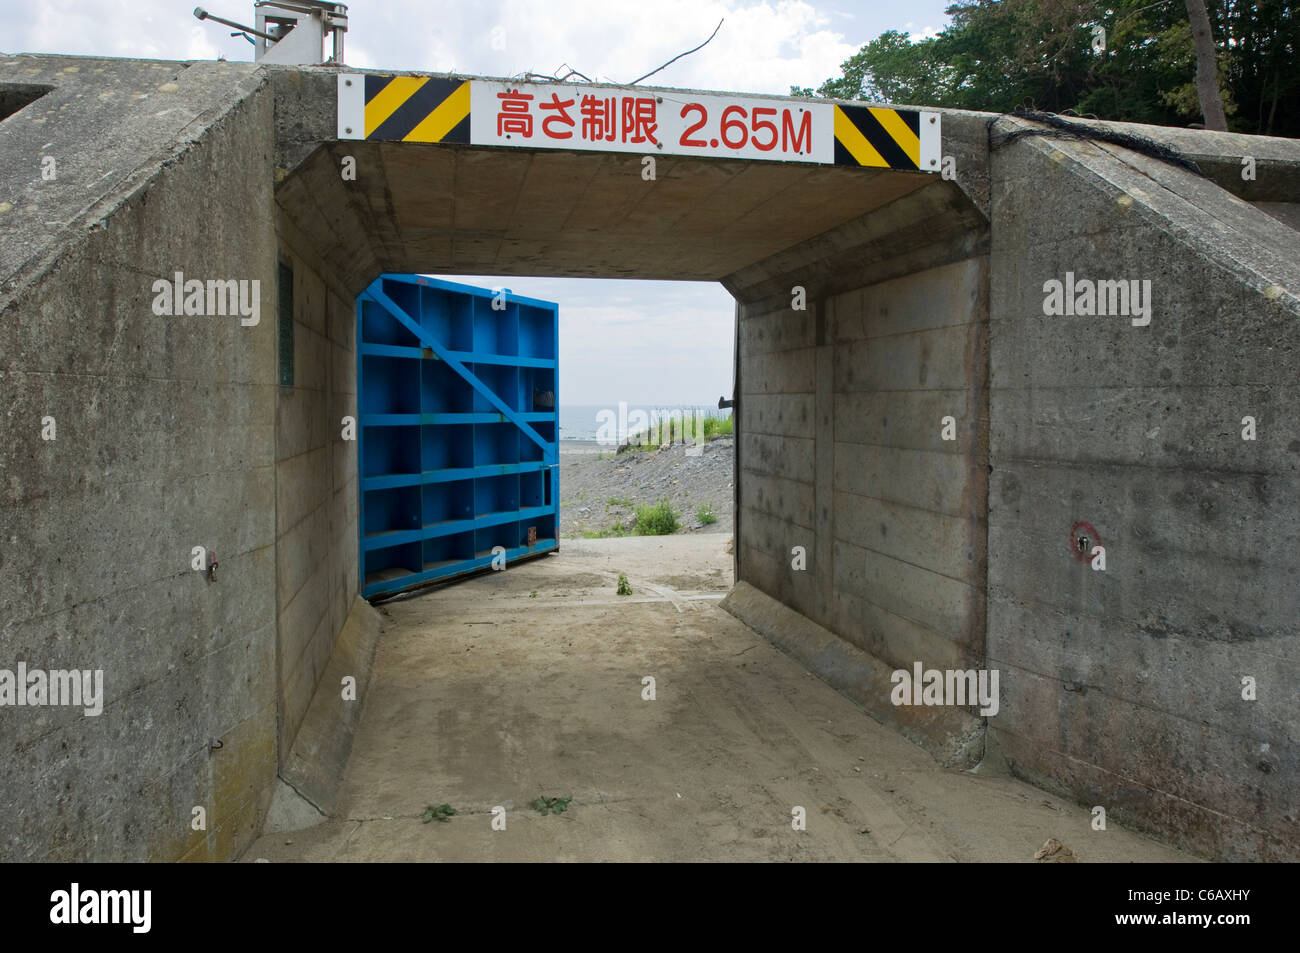 Tsunami wall lock or gate in Iwate, Japan Stock Photo